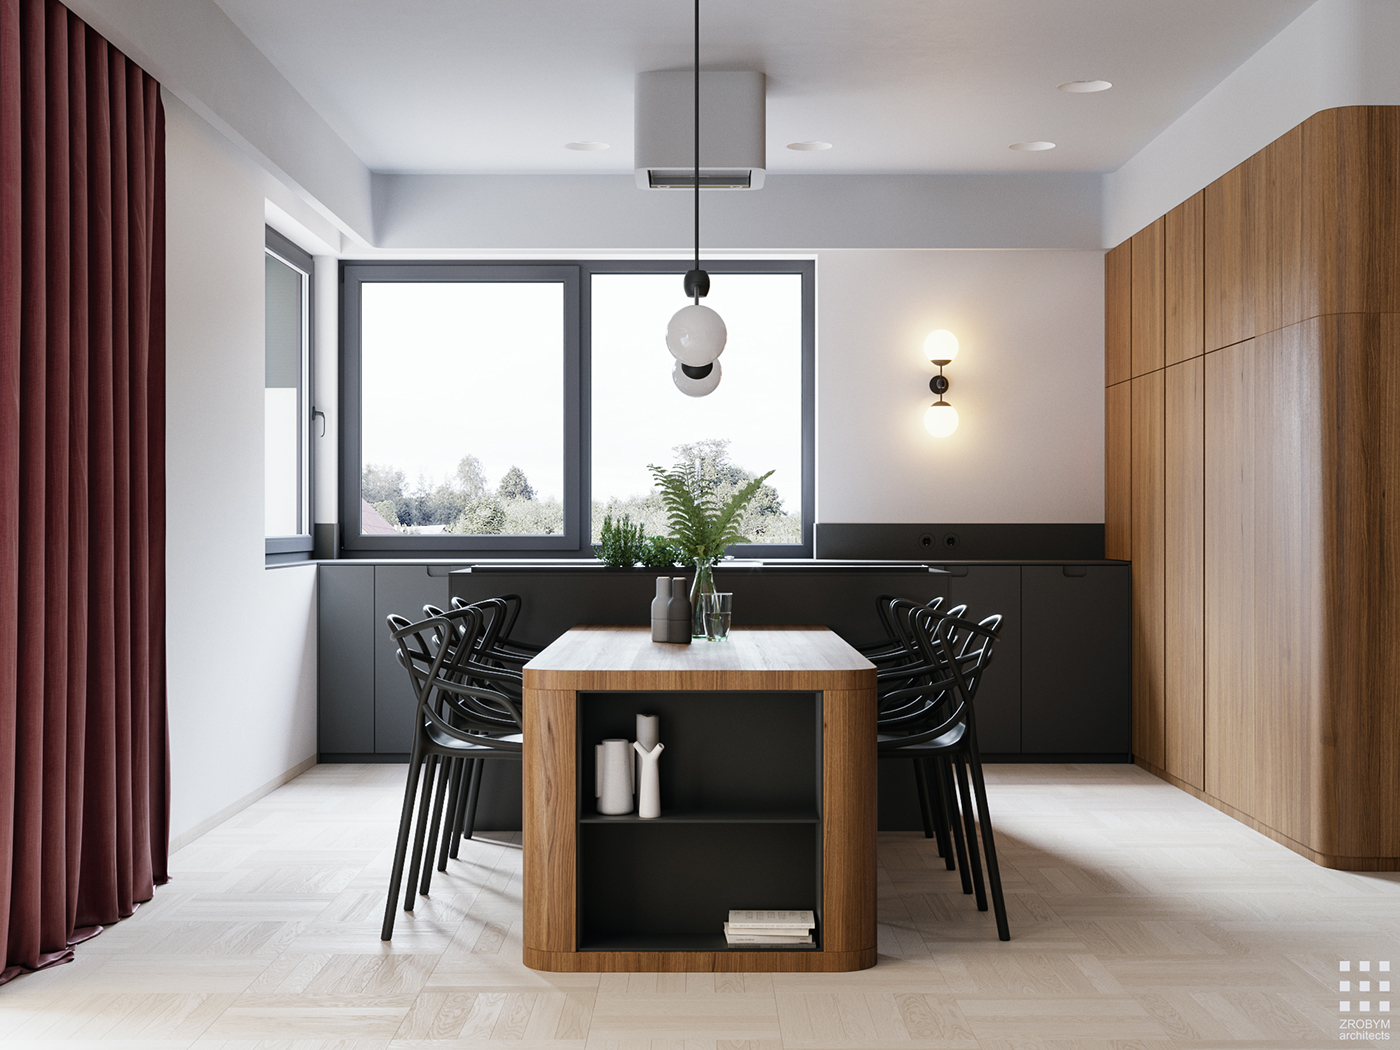 Interior modern design kitchen visualization CG Render CoronaRender 